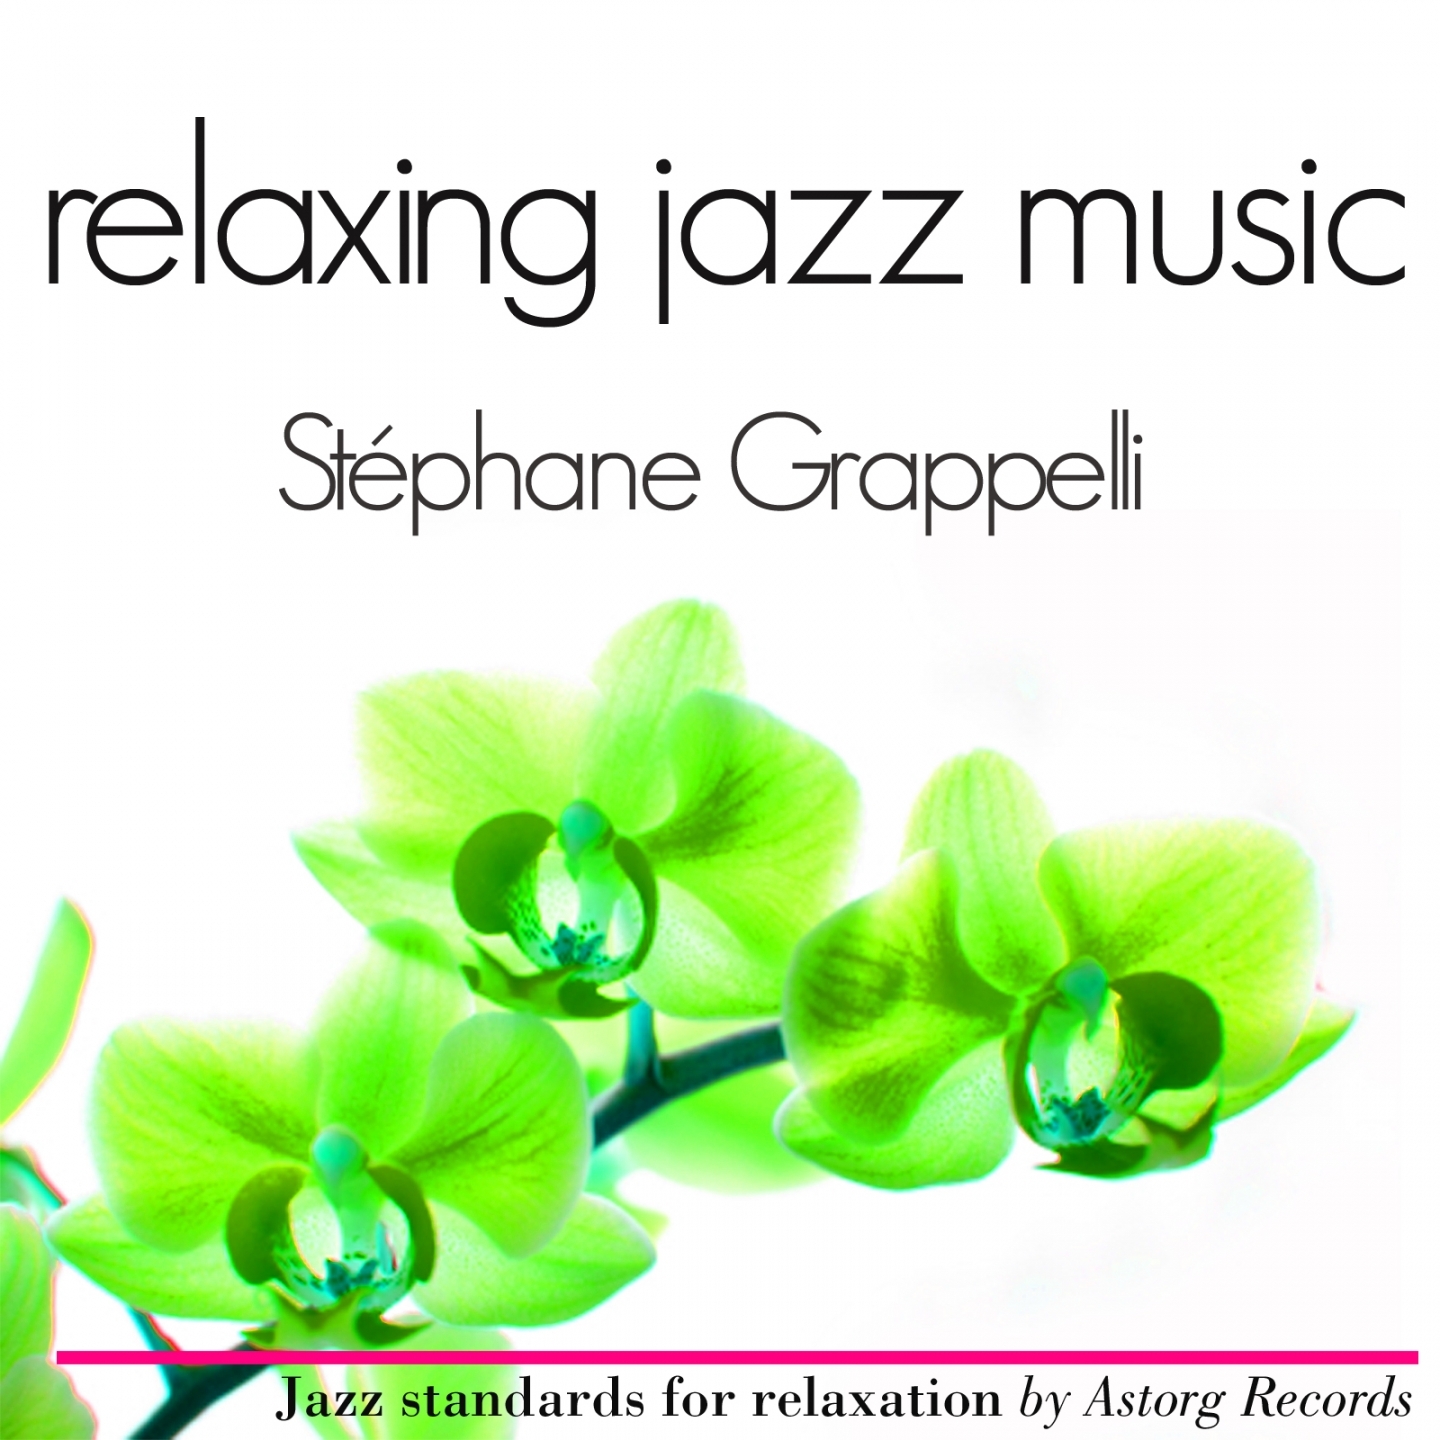 Ste phane Grappelli Relaxing Jazz Music